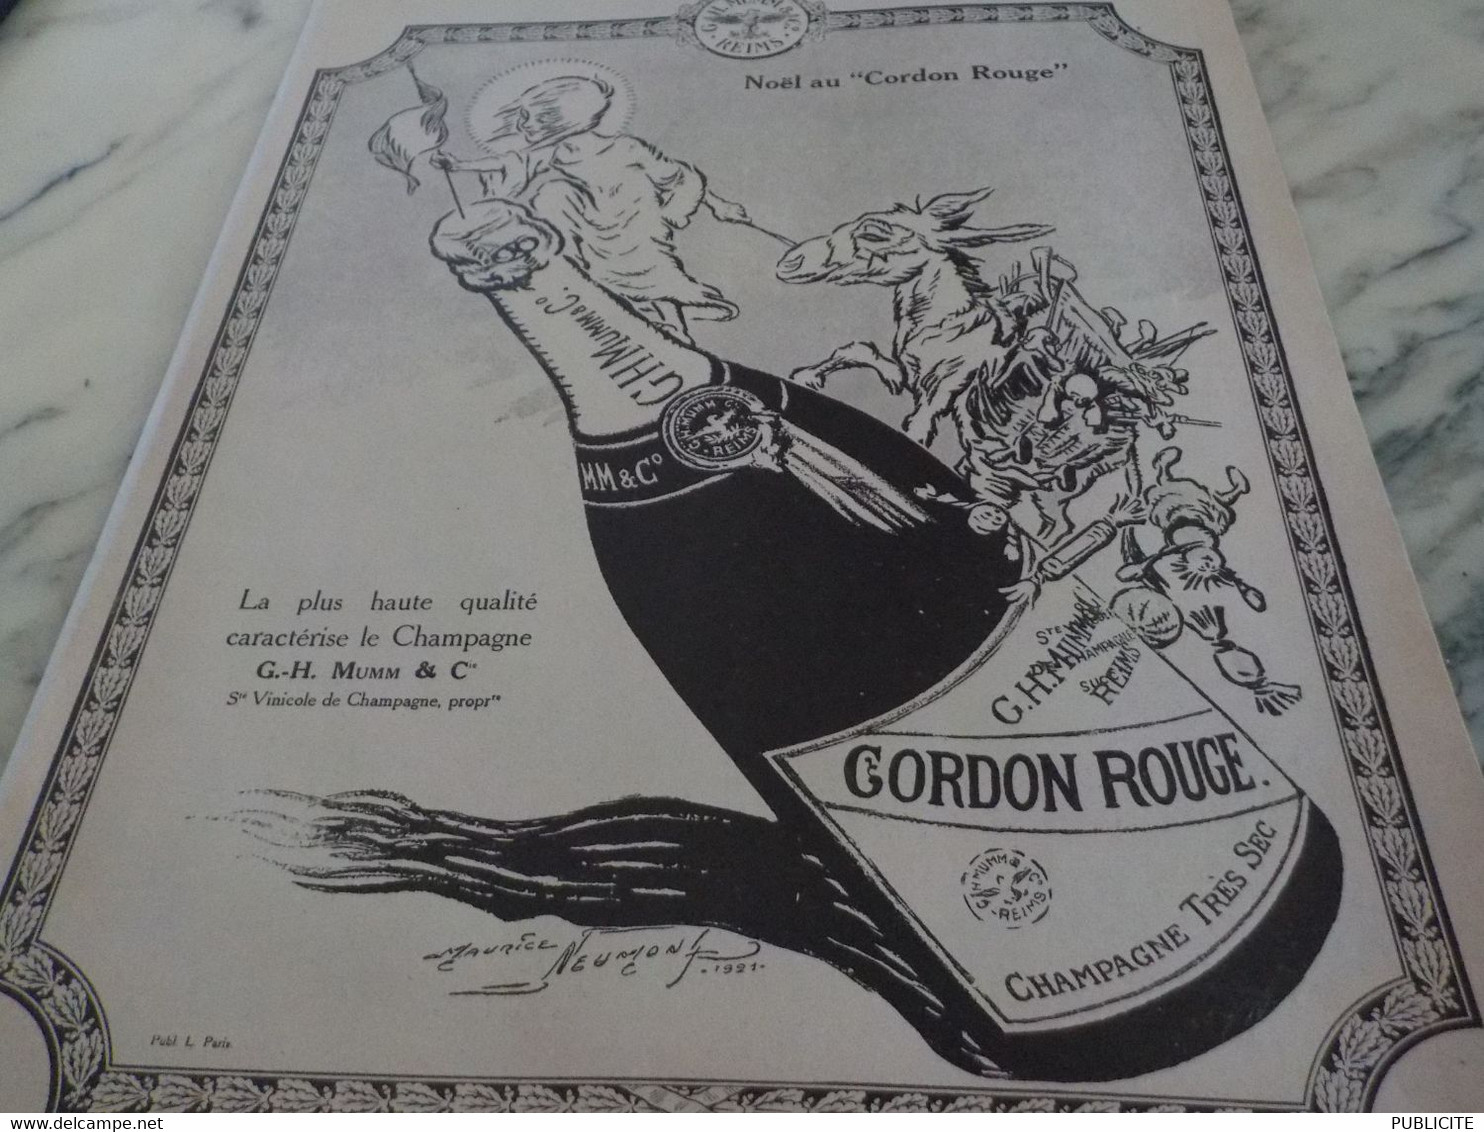 ANCIENNE PUBLICITE NOEL CHAMPAGNE CORDON ROUGE DE MUMM 1921 - Alcools